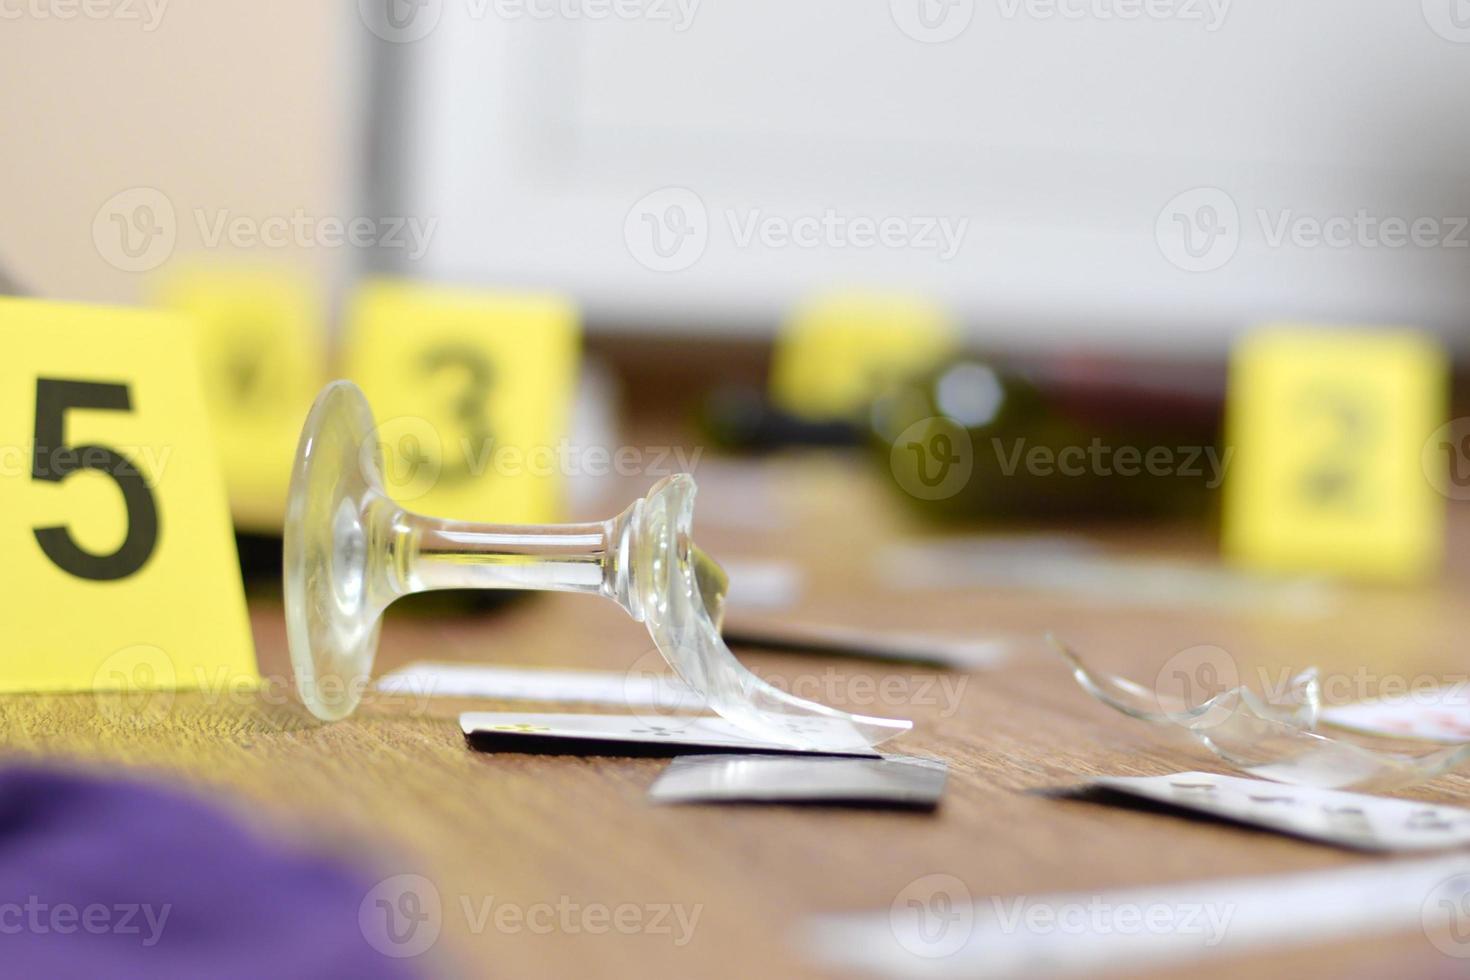 vidrio roto y botella de vino marcados como evidencia durante la investigación de la escena del crimen. muchos marcadores amarillos con números foto